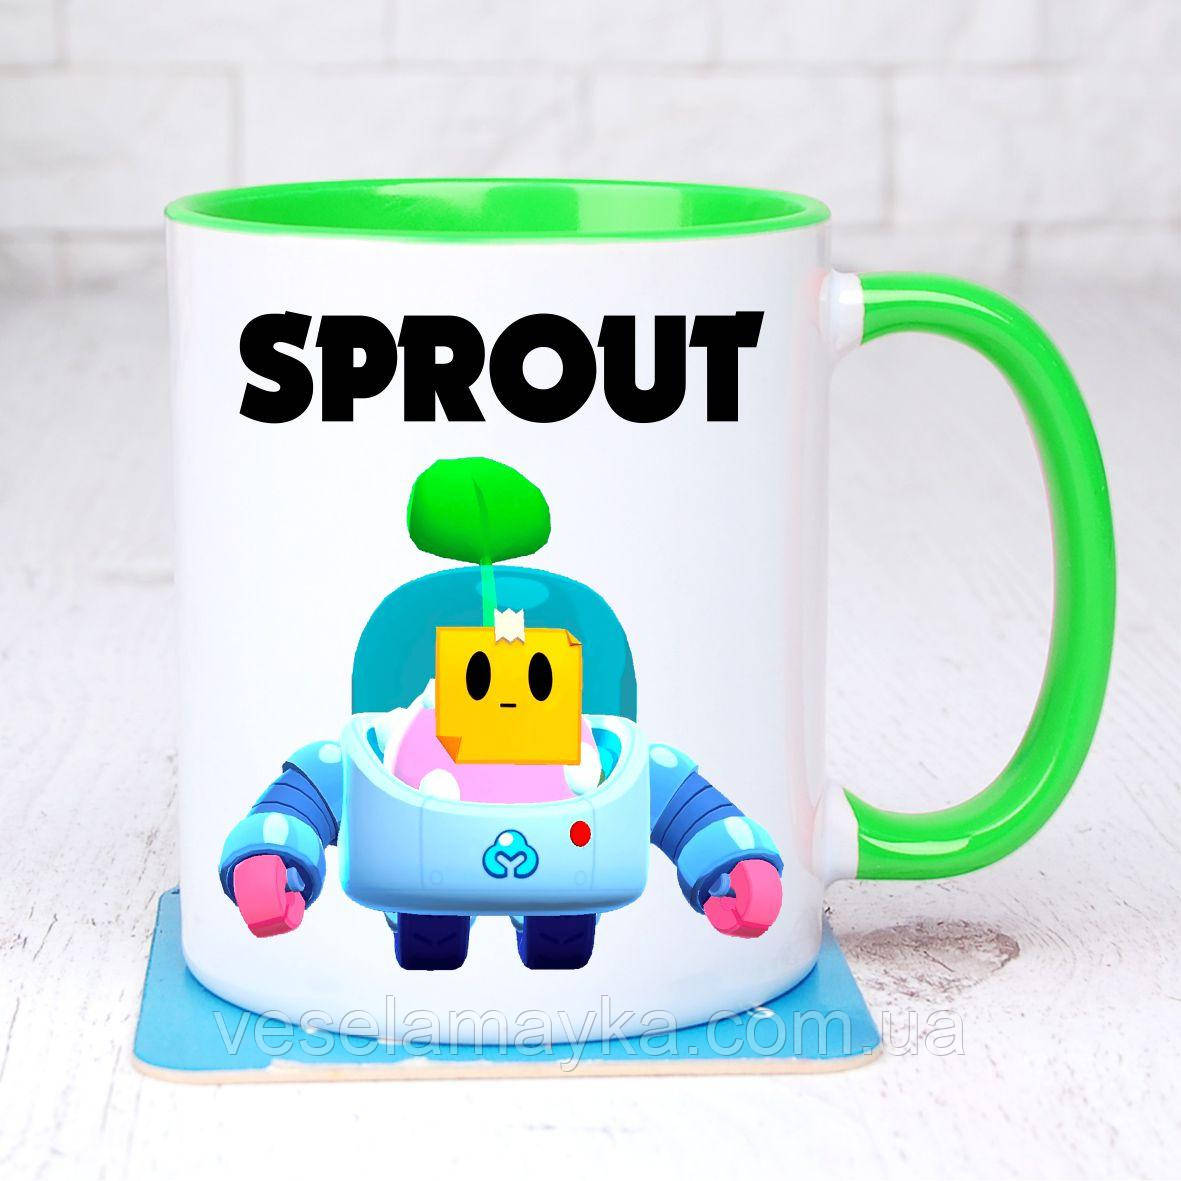 

Чашка BS Спраут 2 (Sprout) Салатовый